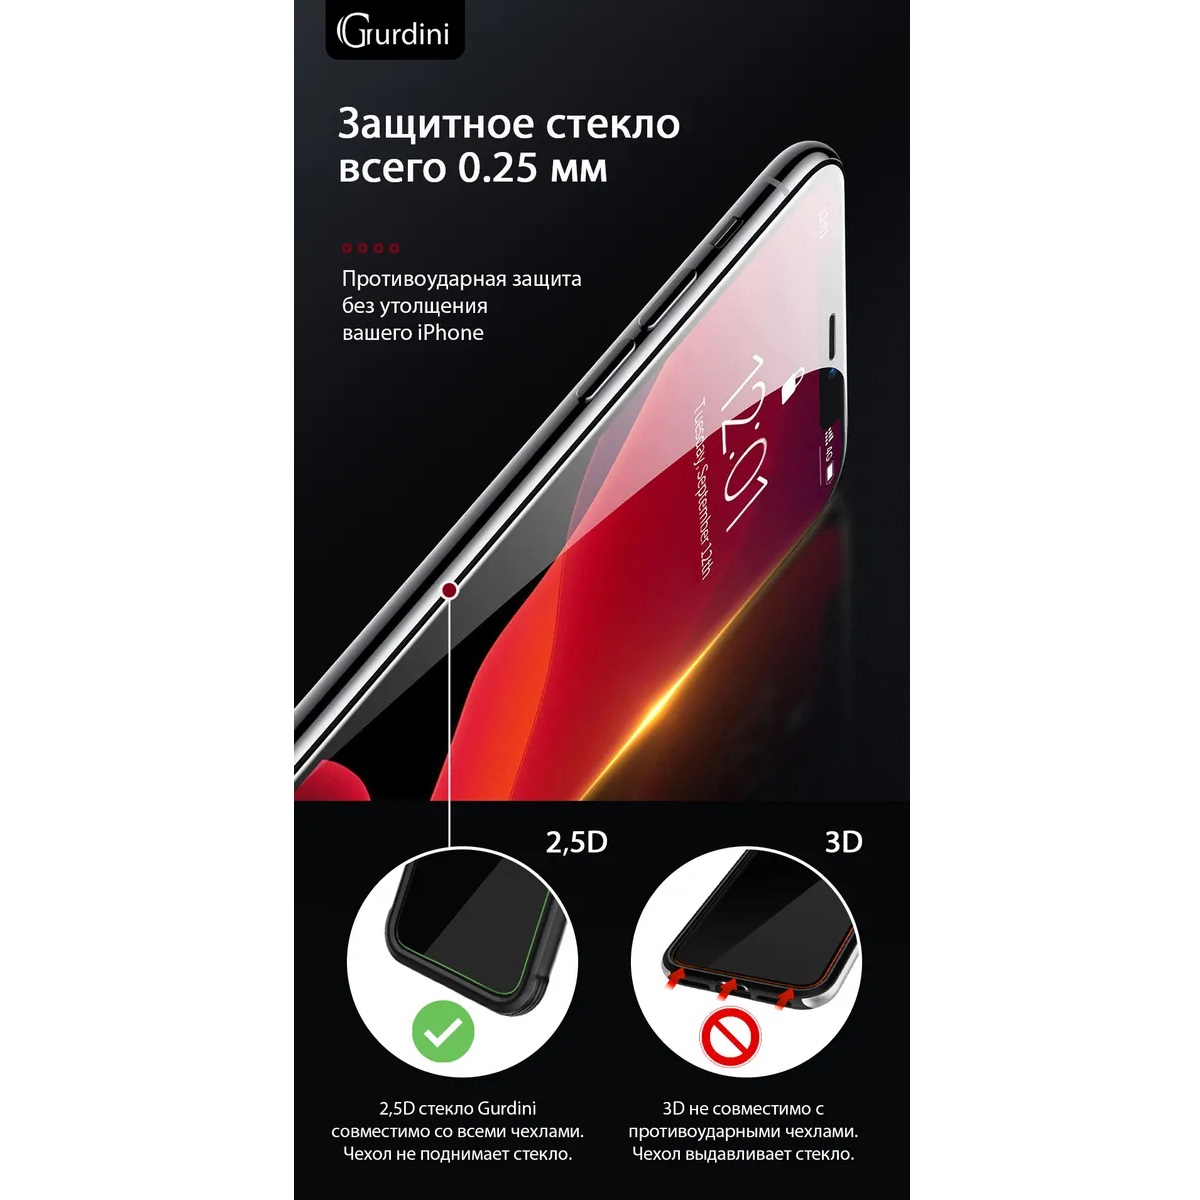 Защитное стекло Gurdini 2.5D Full Cover Glass для iPhone X/Xs/11 Pro